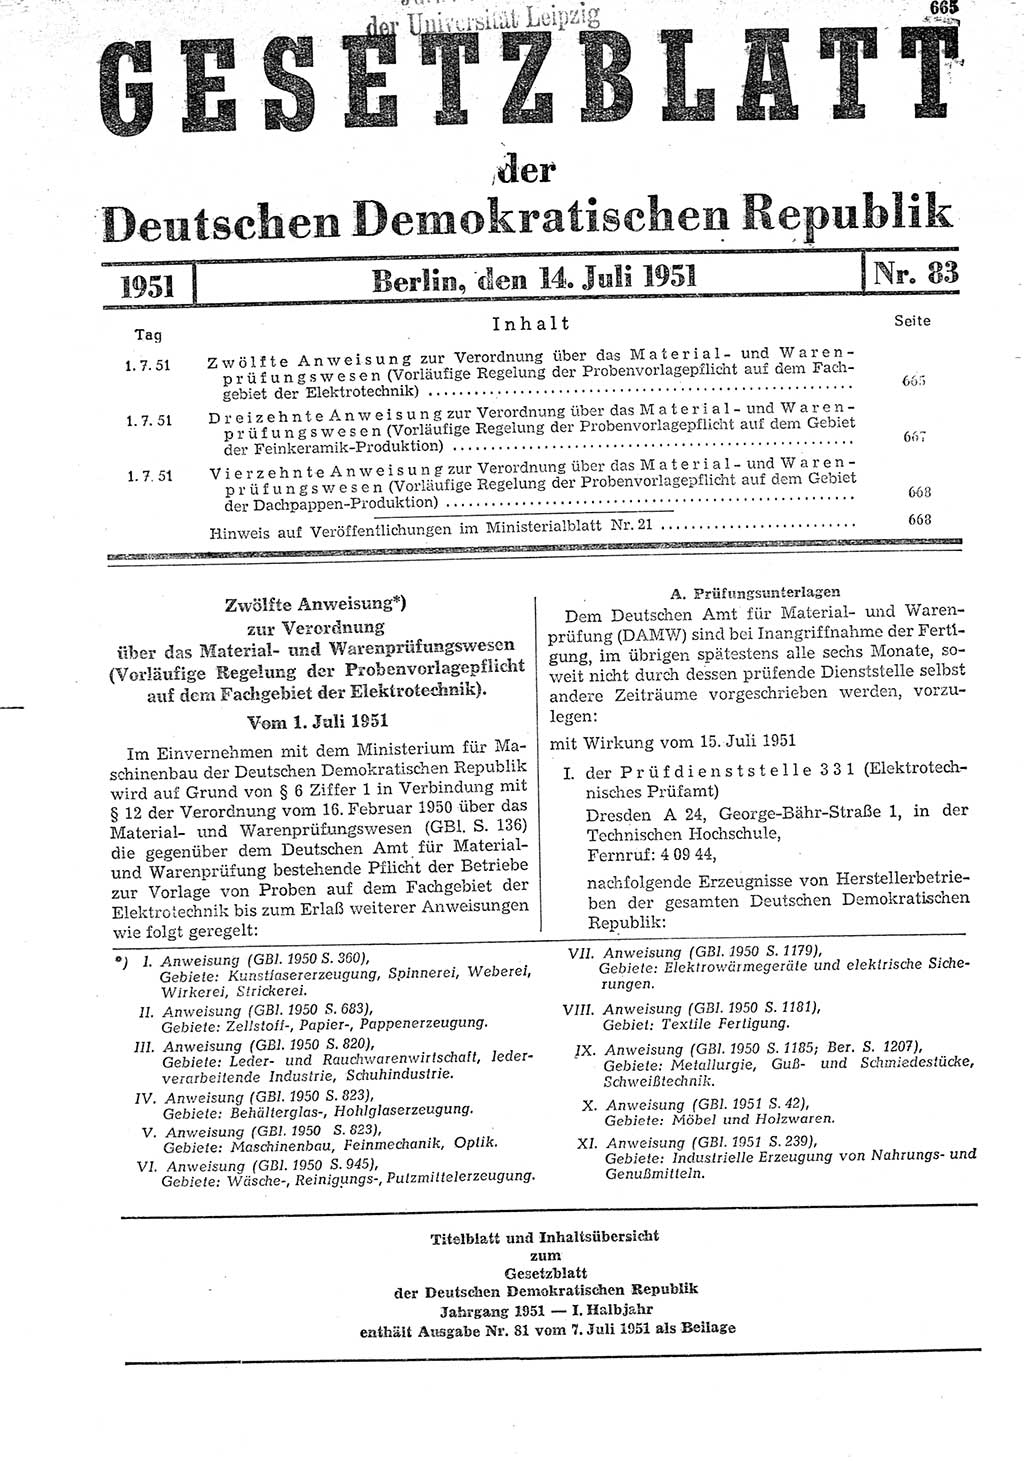 Gesetzblatt (GBl.) der Deutschen Demokratischen Republik (DDR) 1951, Seite 665 (GBl. DDR 1951, S. 665)